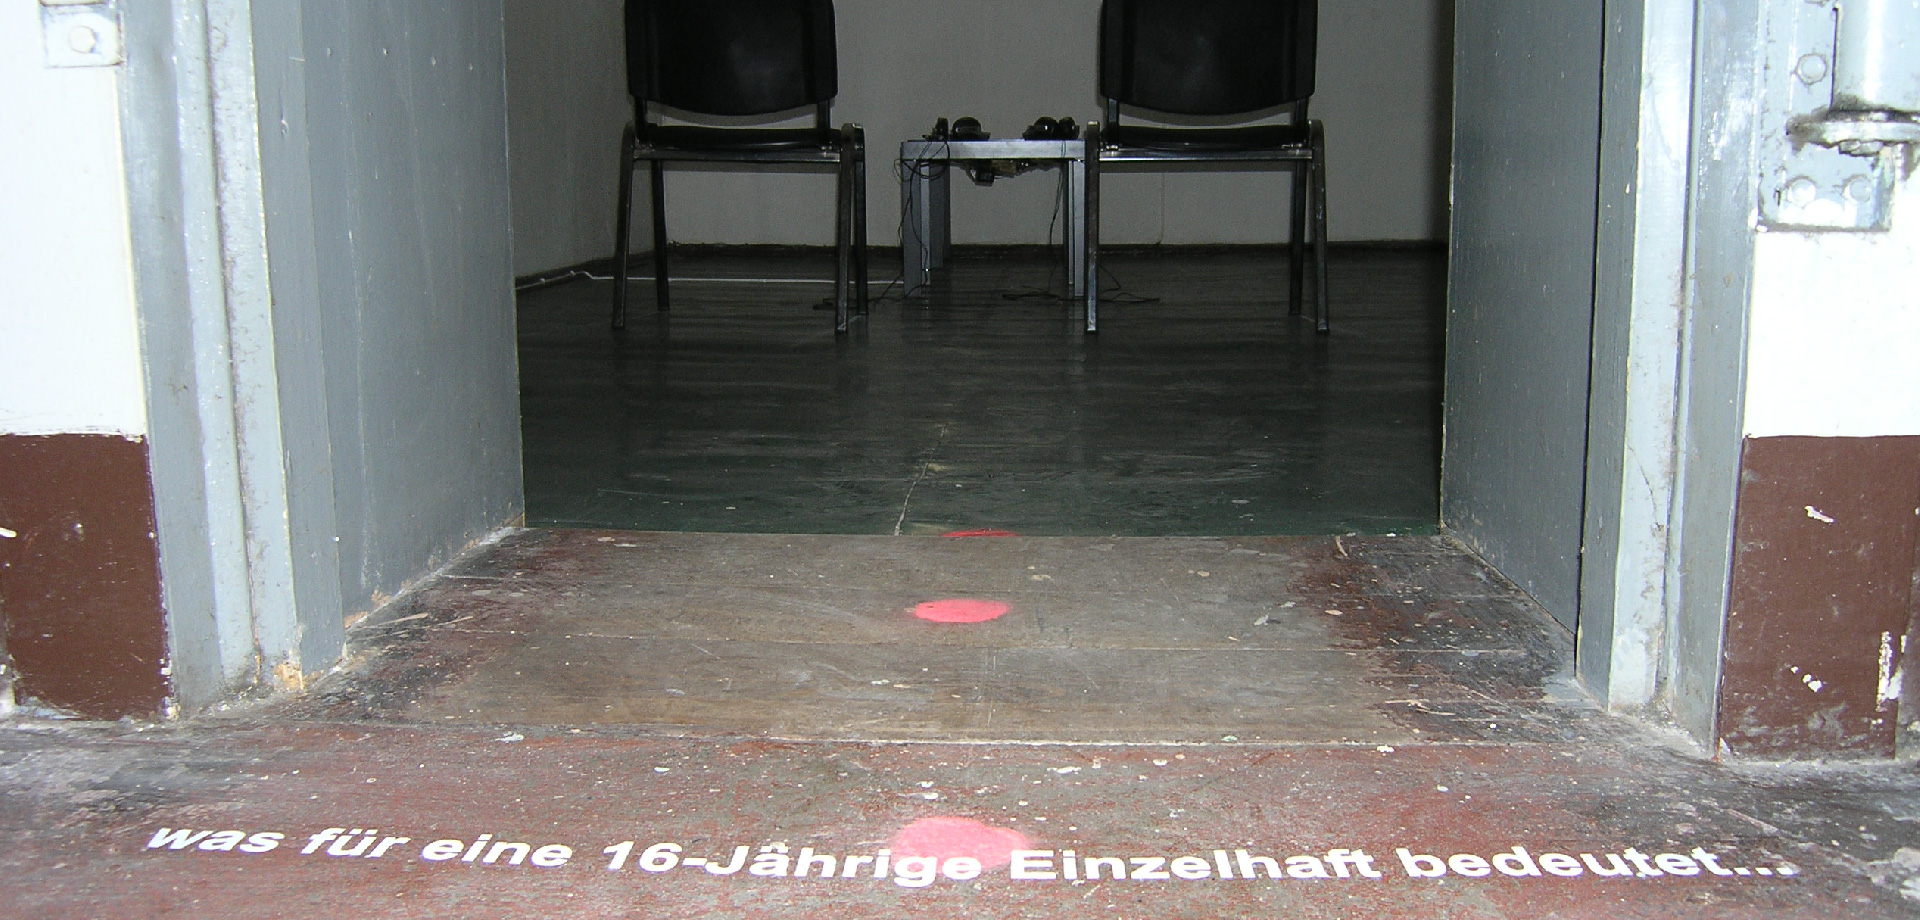 zwei Stühle stehen in einem Raum, vor dem Raum auf dem Boden steht "Was für eine 16jährige Einzelhaft bedeutet..."